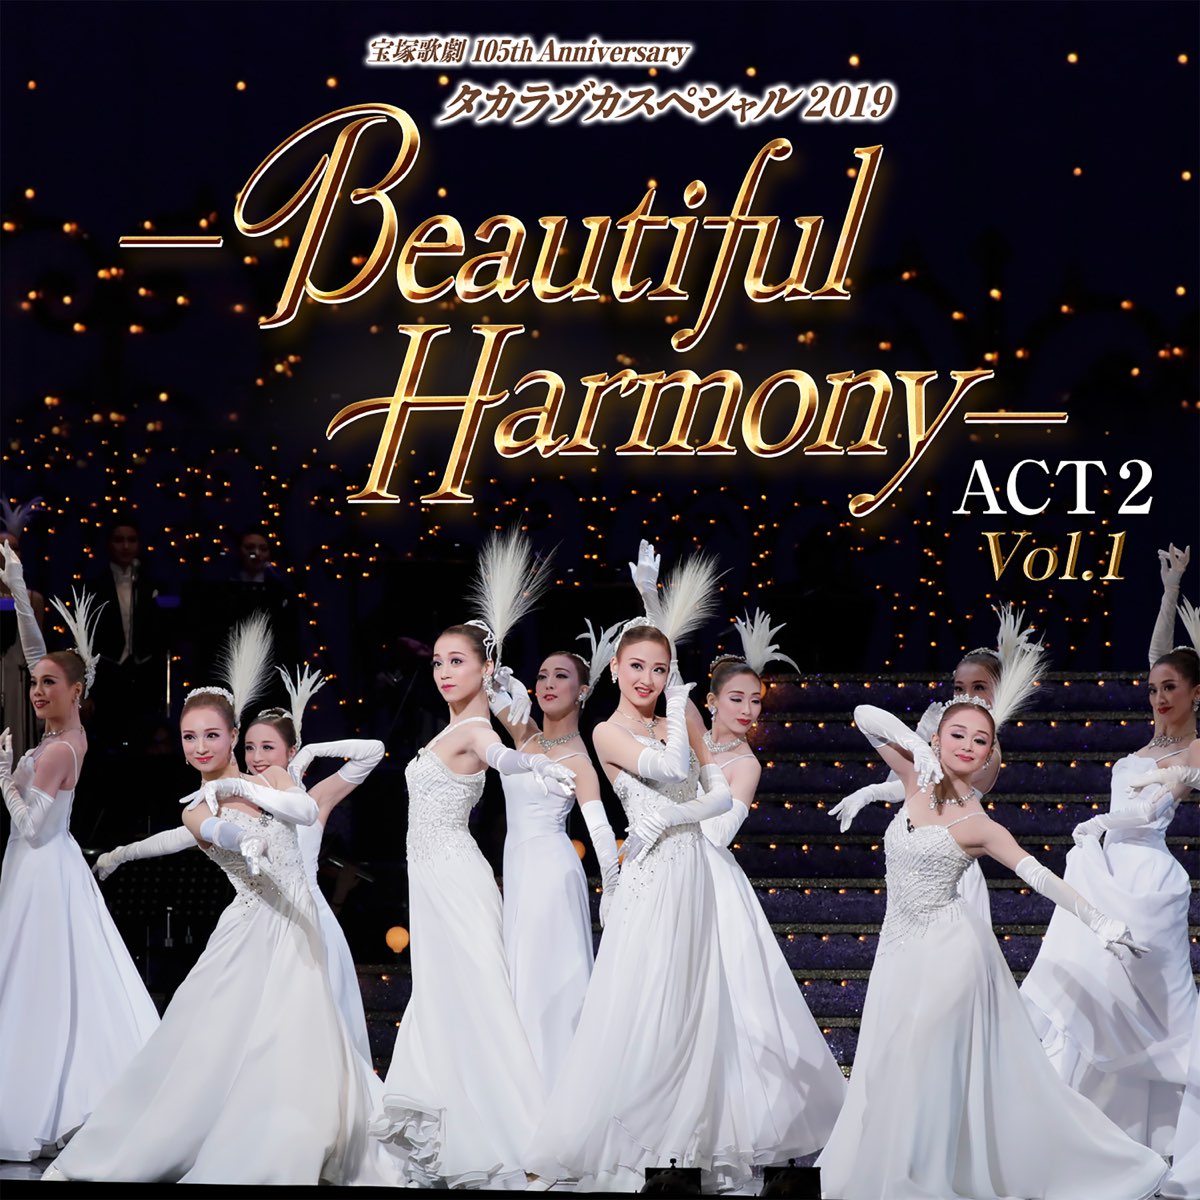 タカラヅカスペシャル 2019 -Beautiful Harmony- ACT2(Vol.1) (ライブ